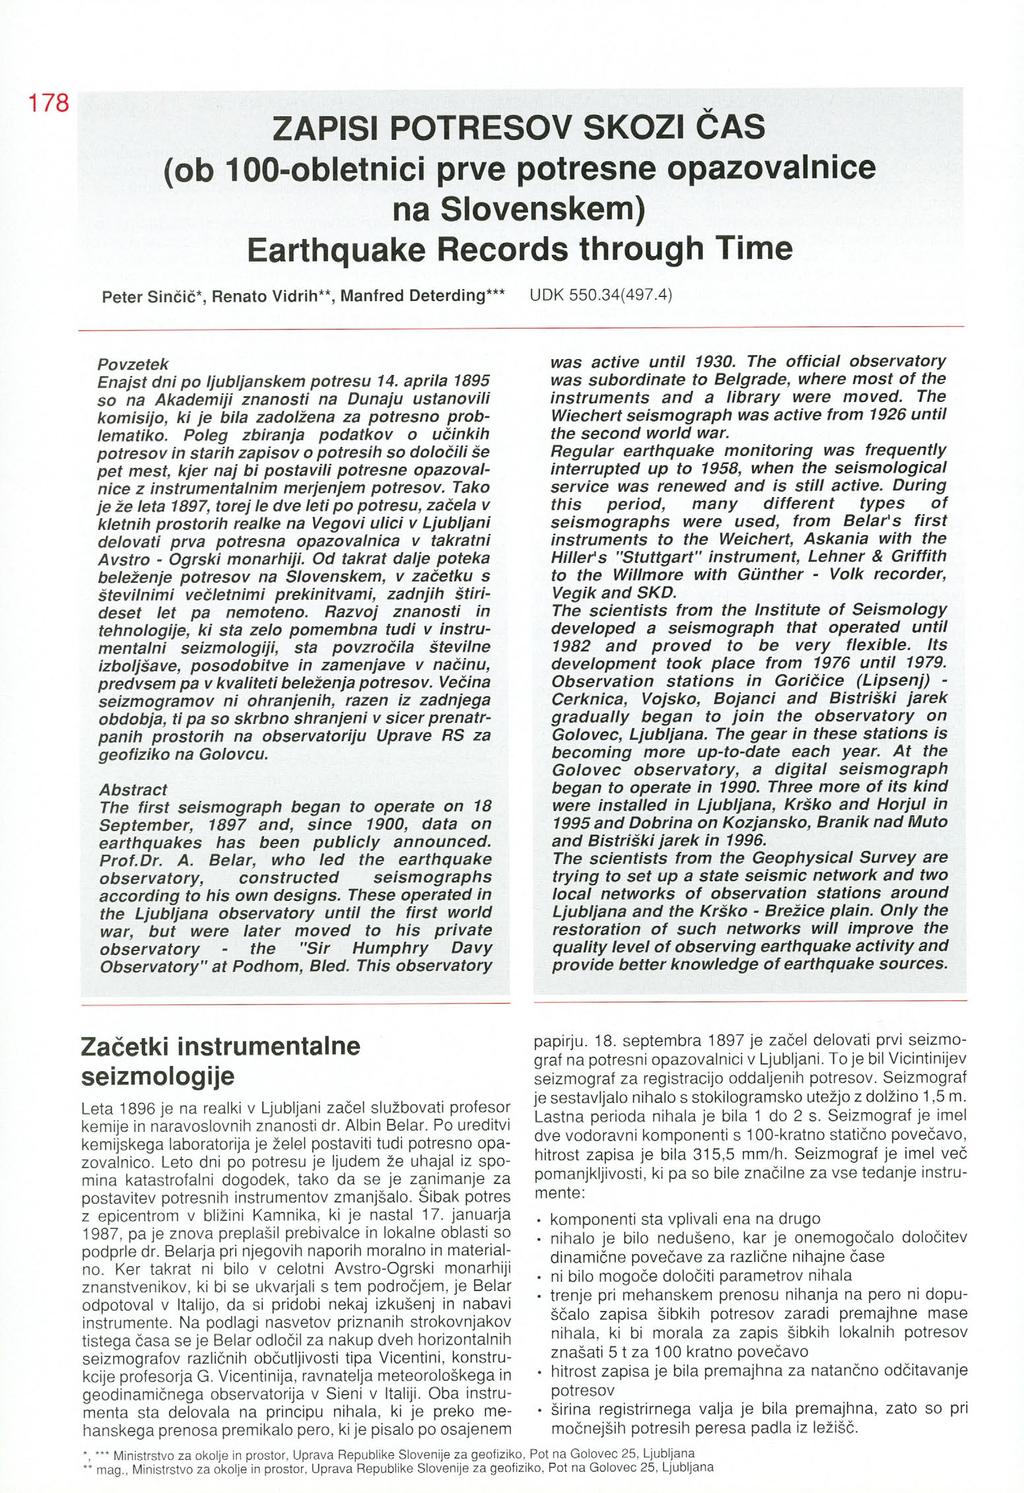 ZAPISI POTRESOV SKOZI CAS (ob 100-obletnici prve potresne opazovalnice na Slovenskem) Earthquake Records through Time Peter Sinčič*, Renato Vidrih**, Manfred Deterding*** UDK 550.34(497.